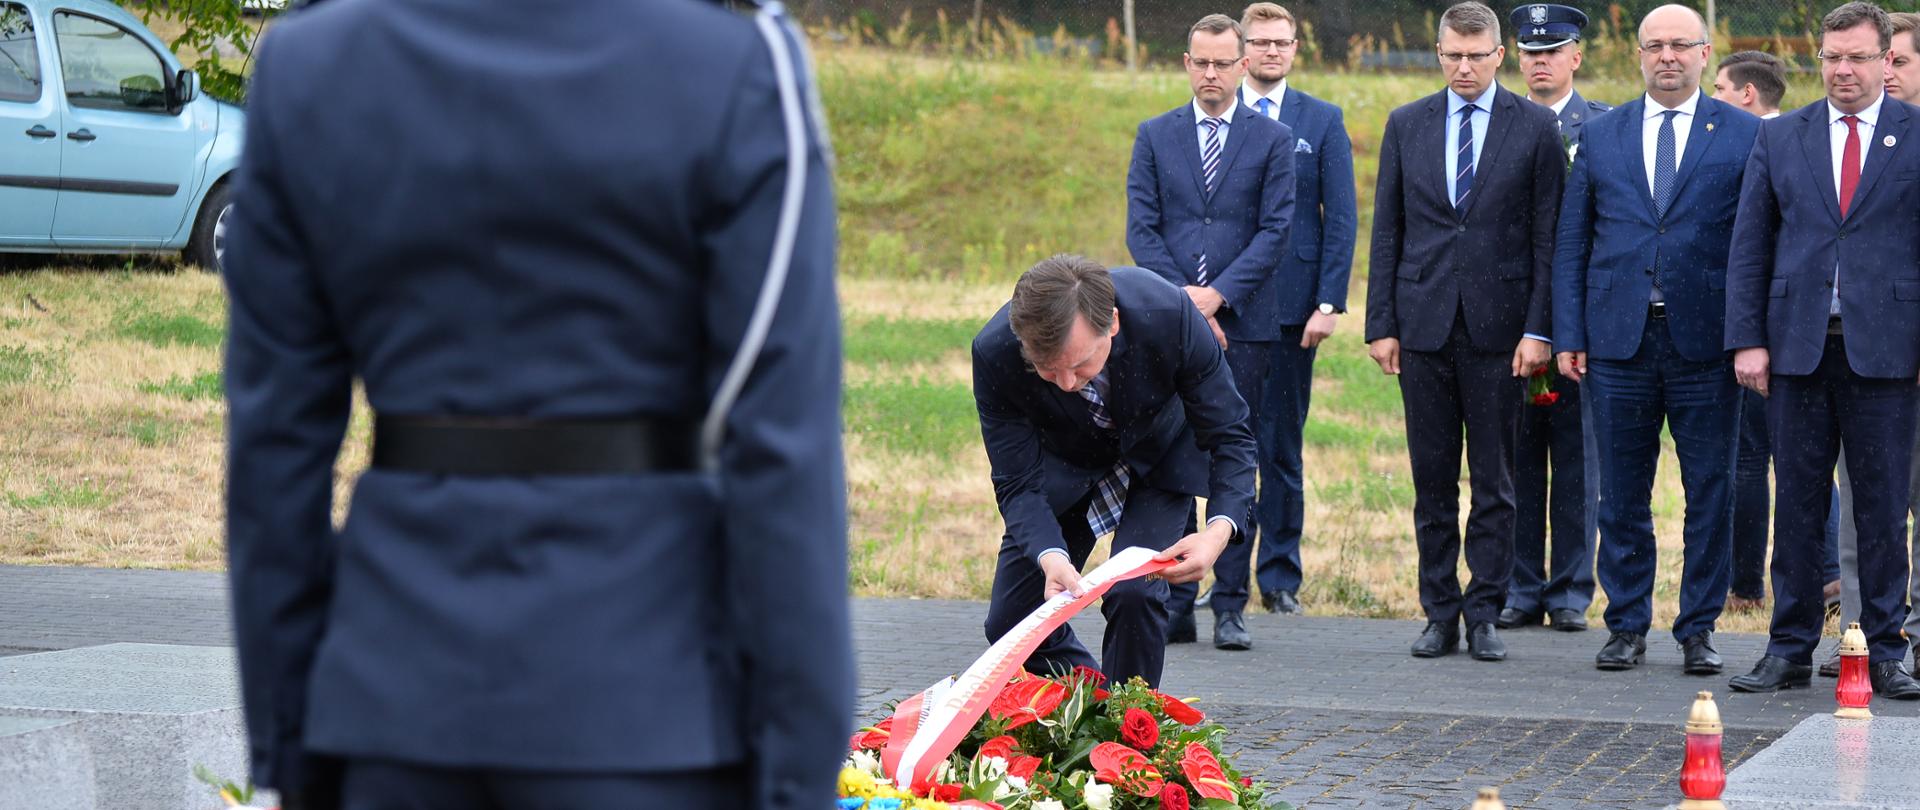 Ministerstwo Sprawiedliwości uczciło pamięć ofiar Rzezi Wołyńskiej